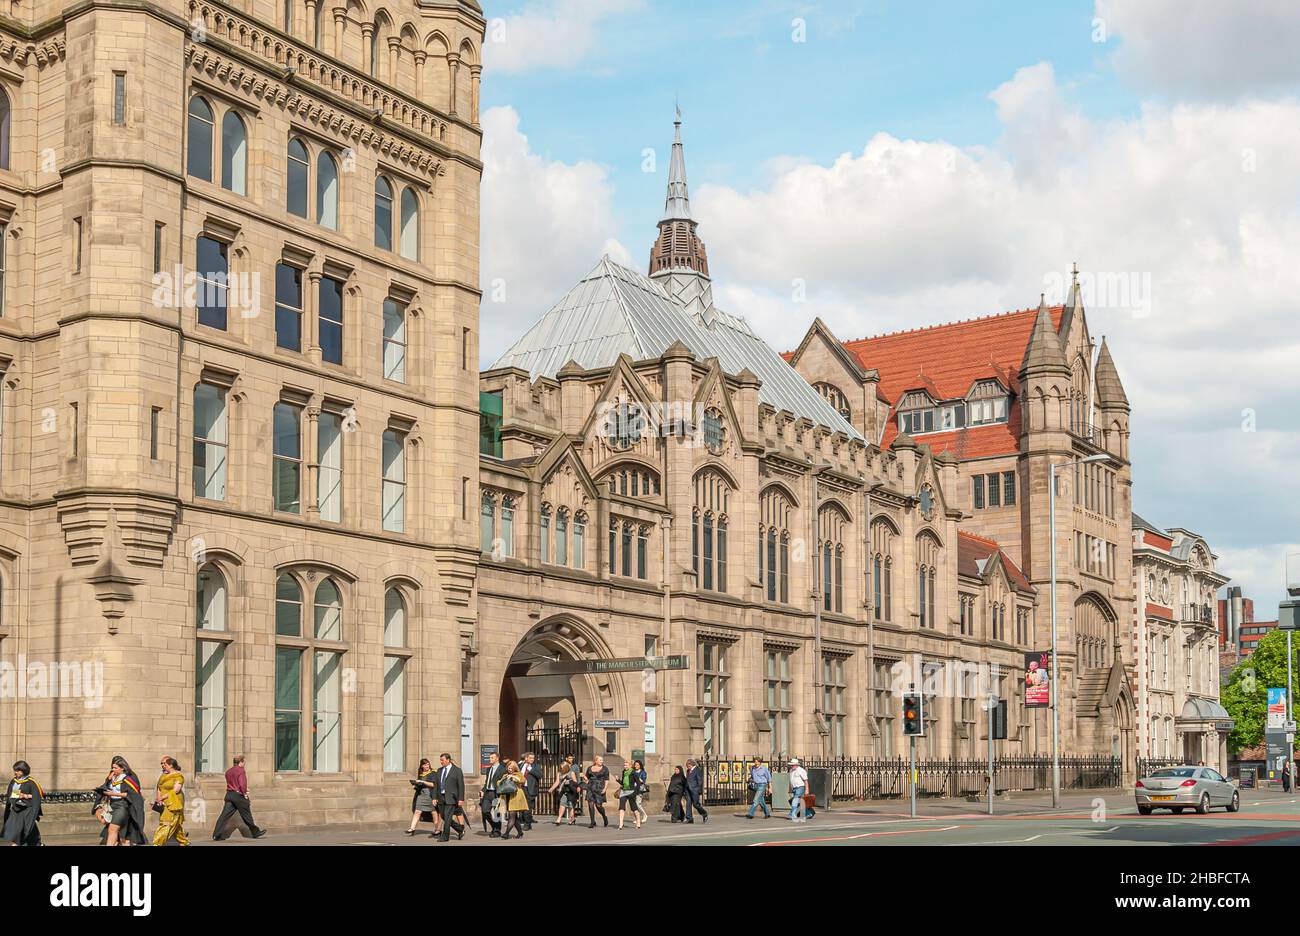 Le bâtiment Old Quadrangle de l'Université de Manchester, Angleterre, Royaume-Uni Banque D'Images